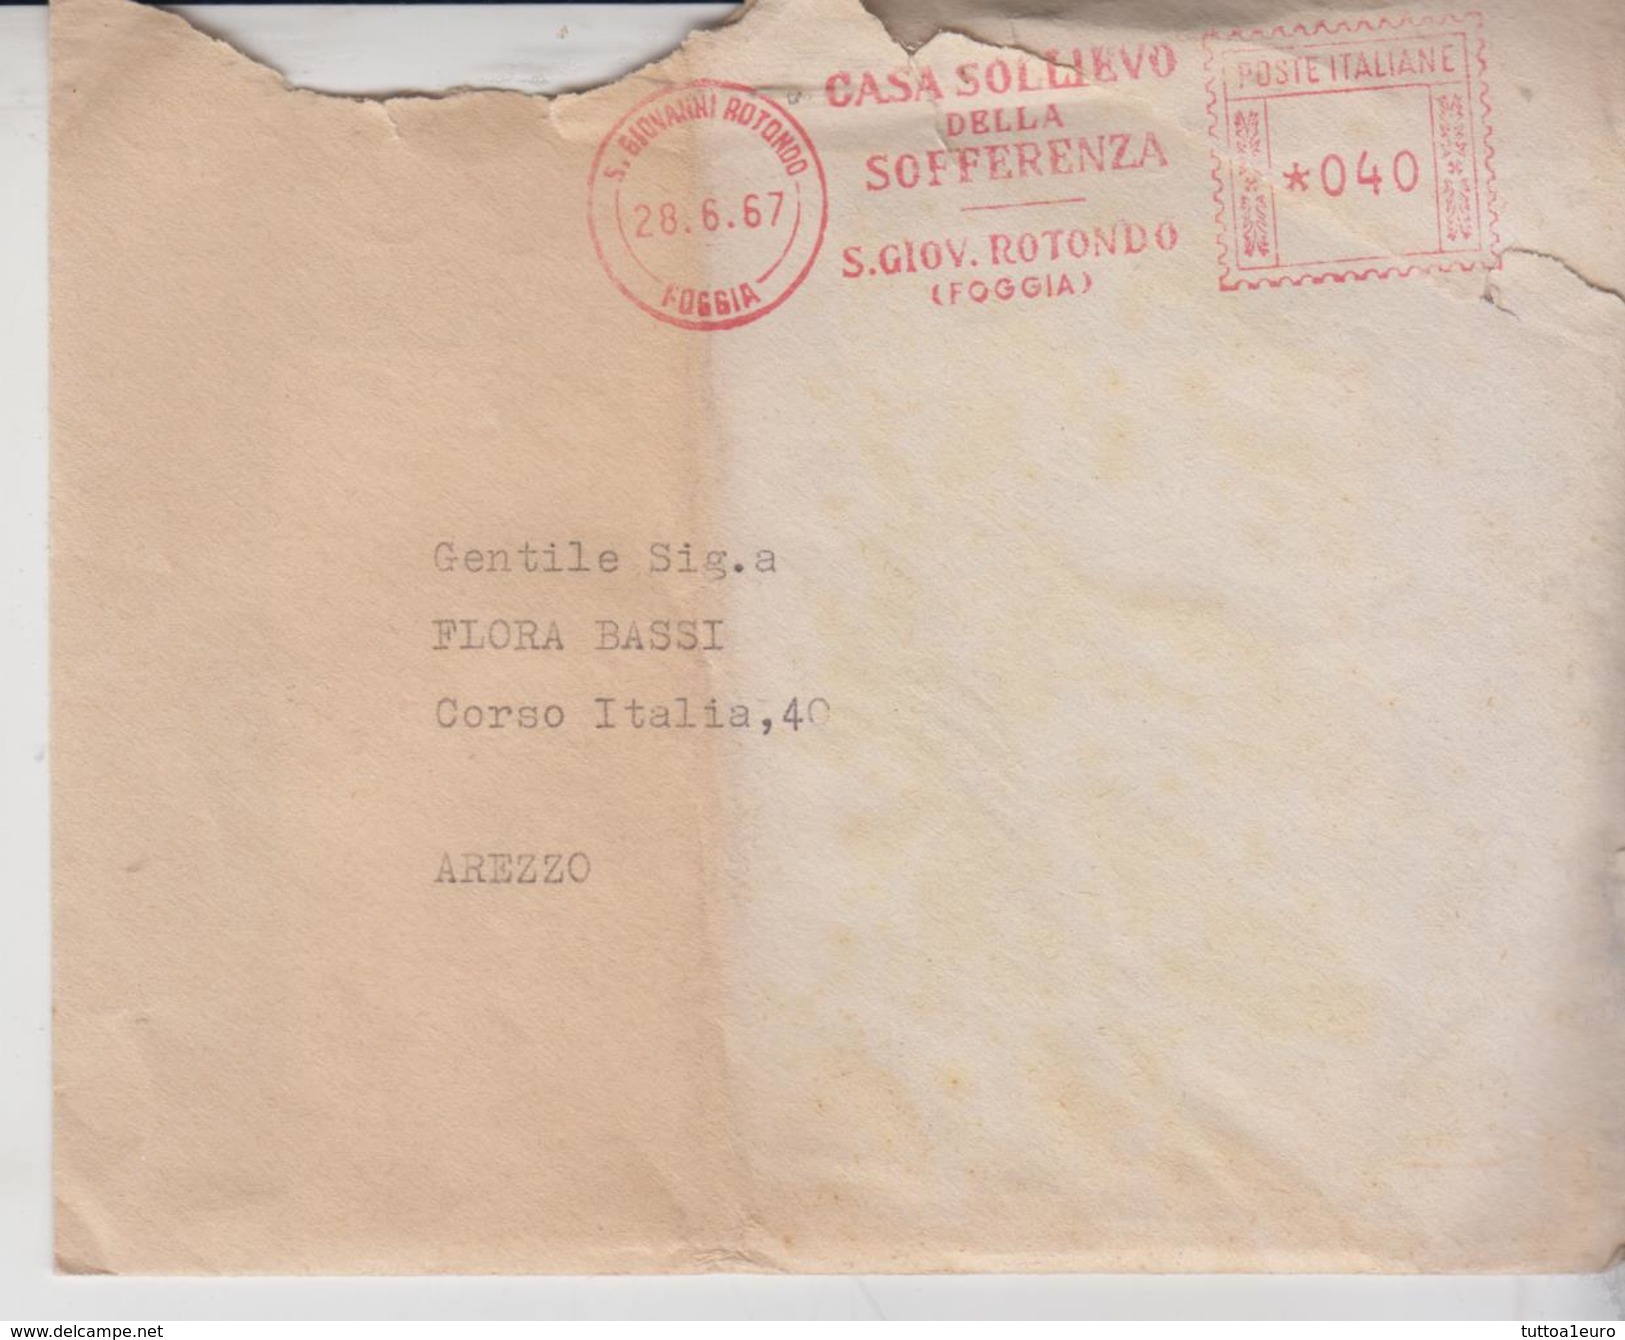 S. Giovanni Rotondo Foggia Padre Pio Busta + Lettera 1967 Timbro Rosso Ema - 1961-70: Storia Postale